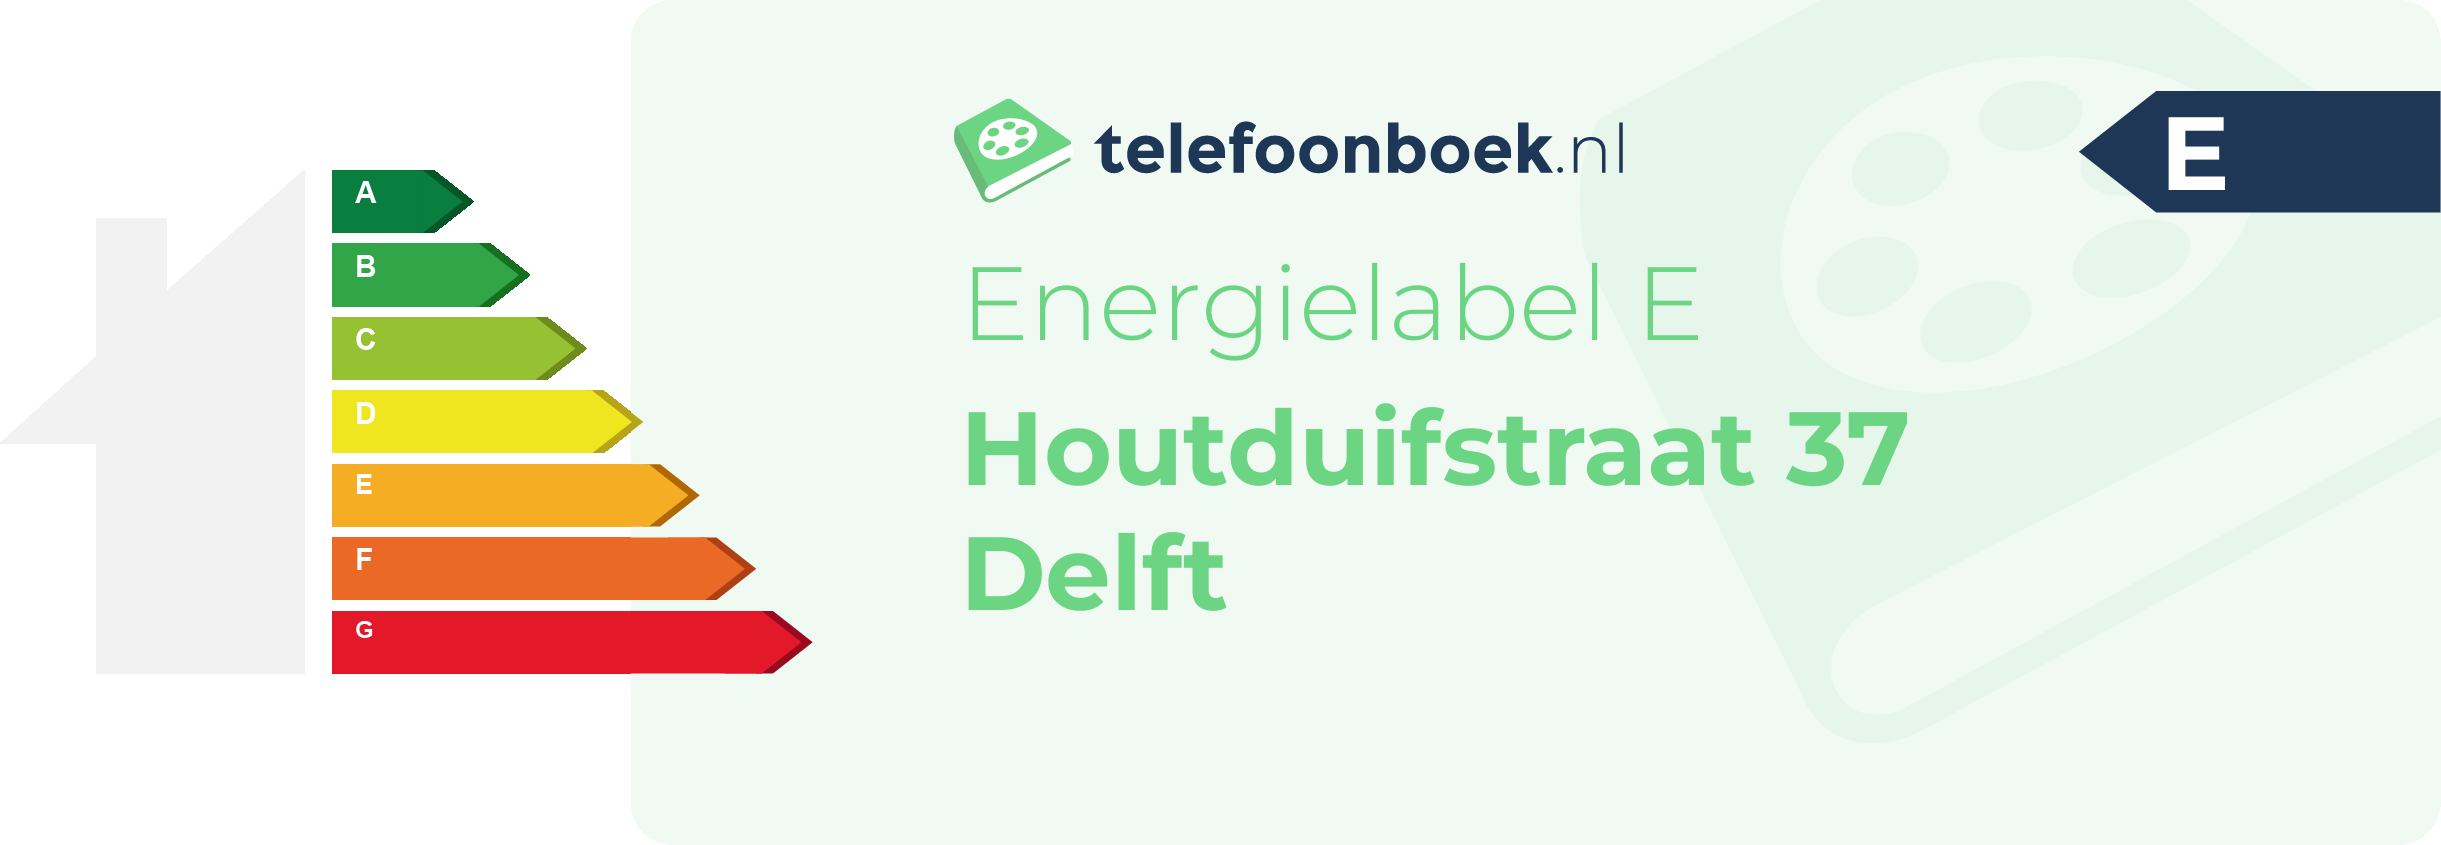 Energielabel Houtduifstraat 37 Delft